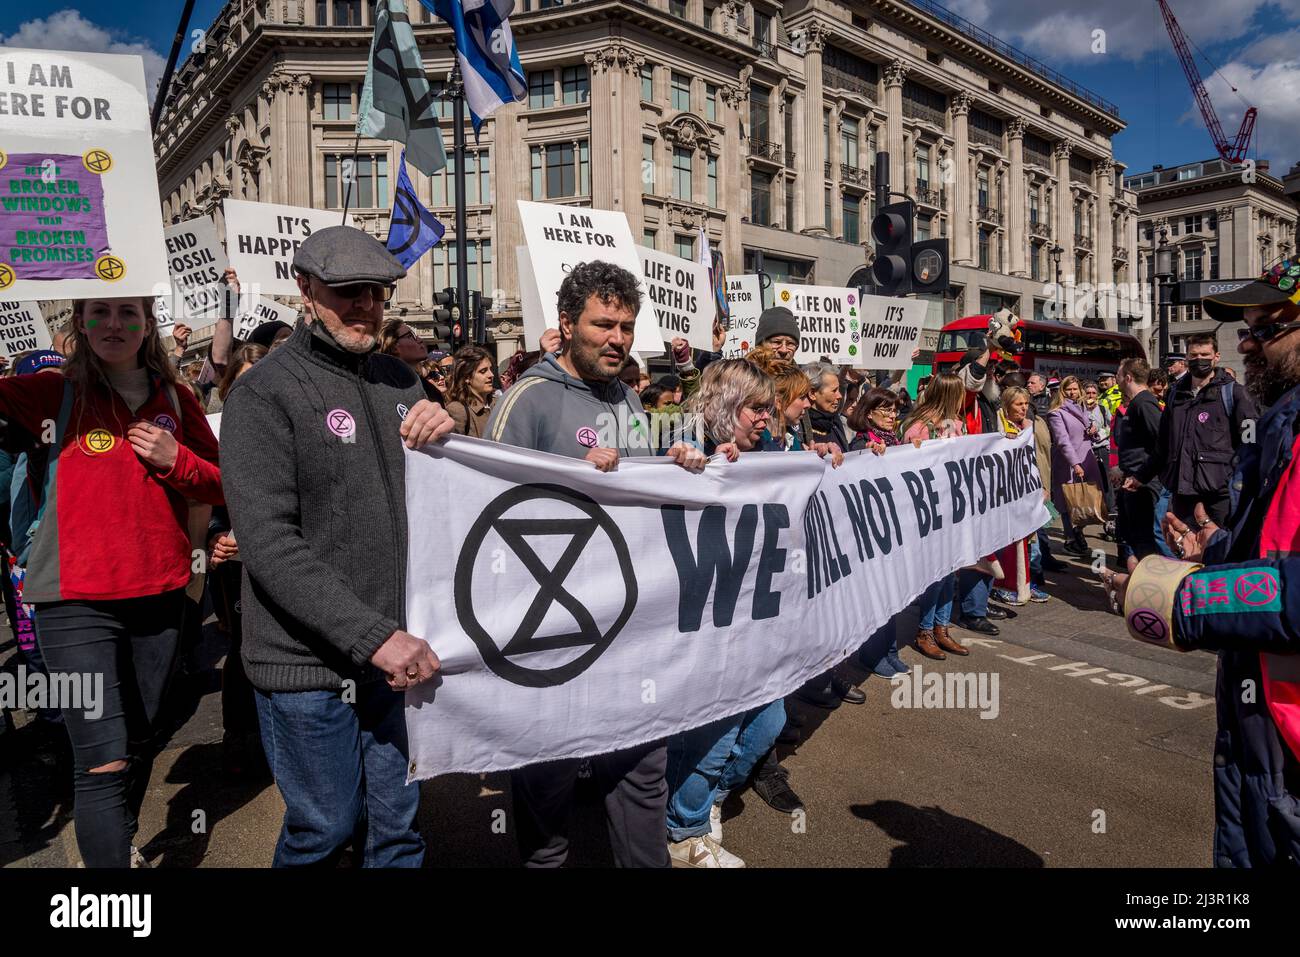 Blocco stradale, non saremo spettatori, una protesta della ribellione di estinzione che combatte per la giustizia climatica, nel centro di Londra, 09.04.2022, Londra, Inghilterra, REGNO UNITO Foto Stock